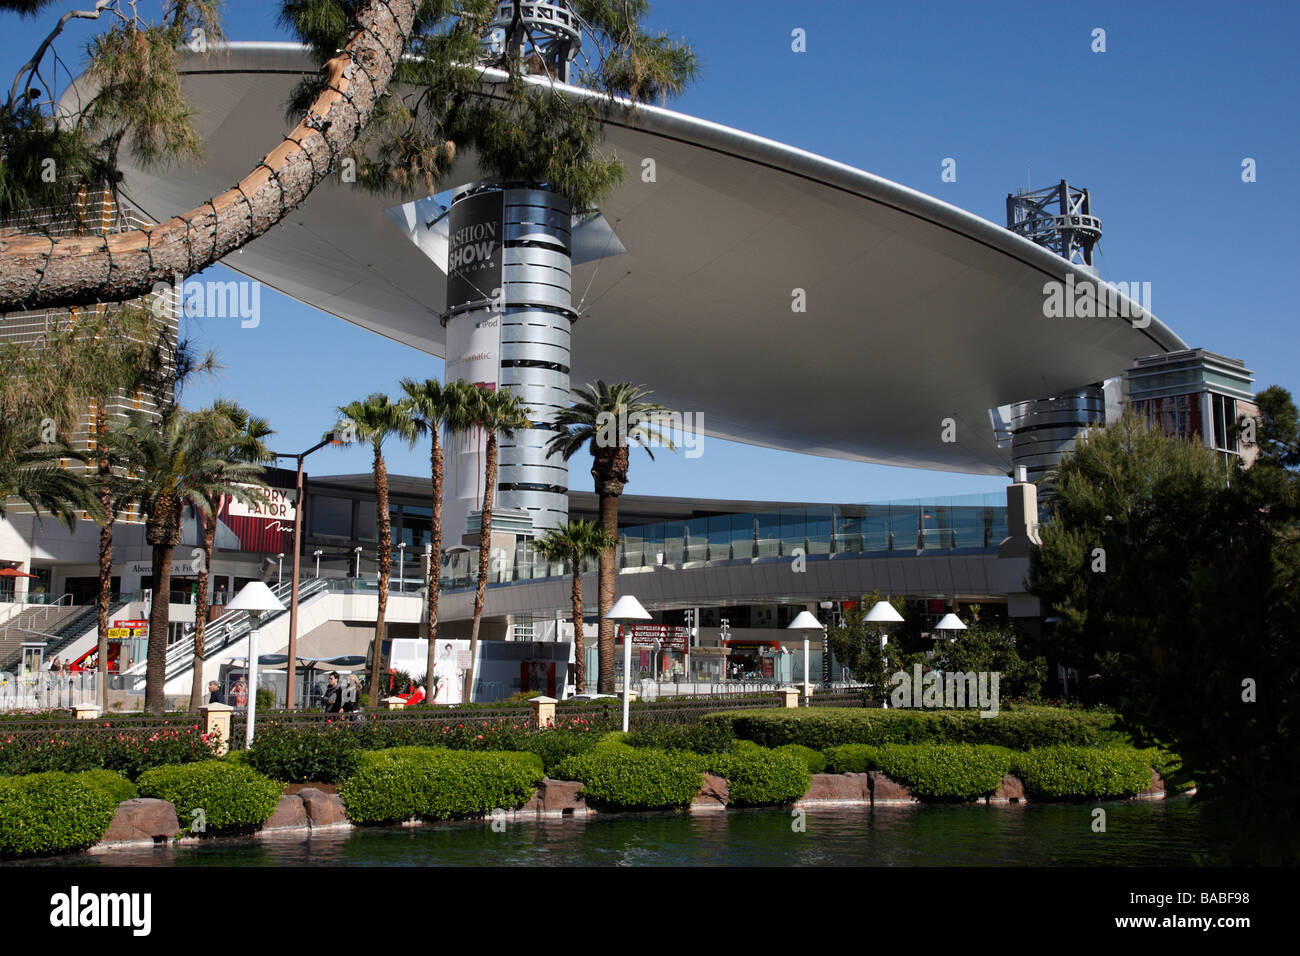 die Fashion show Einkaufszentrum Las Vegas Boulevard Las Vegas Nevada, usa Stockfoto